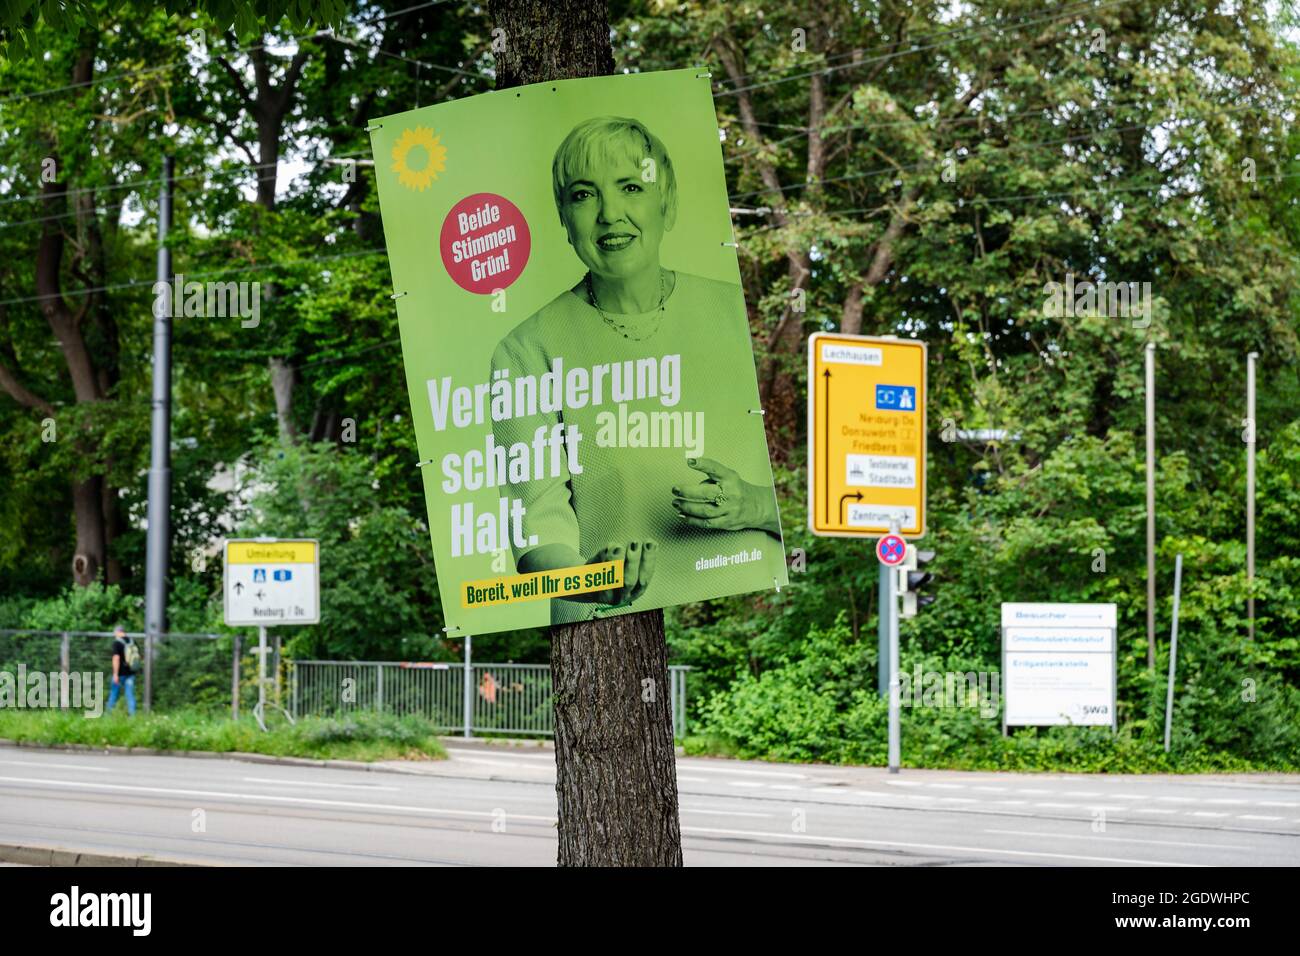 Elezioni federali tedesche, manifesti della campagna si sono manifestati nella città distribuita dall'Alleanza dei Verdi B90 Foto Stock